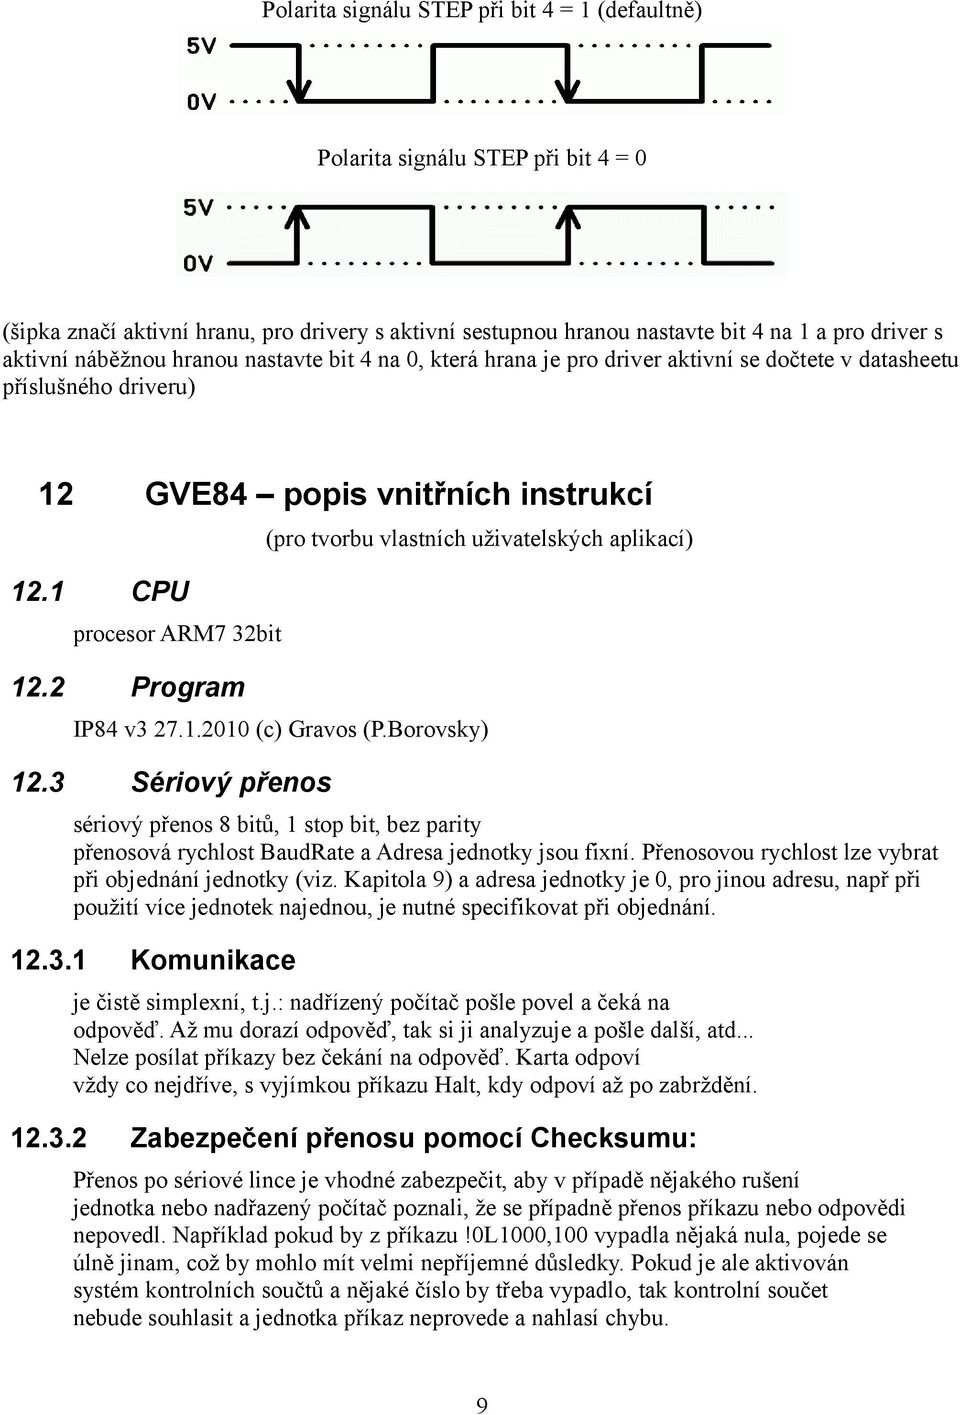 2 Program (pro tvorbu vlastních uživatelských aplikací) IP84 v3 27.1.2010 (c) Gravos (P.Borovsky) 12.